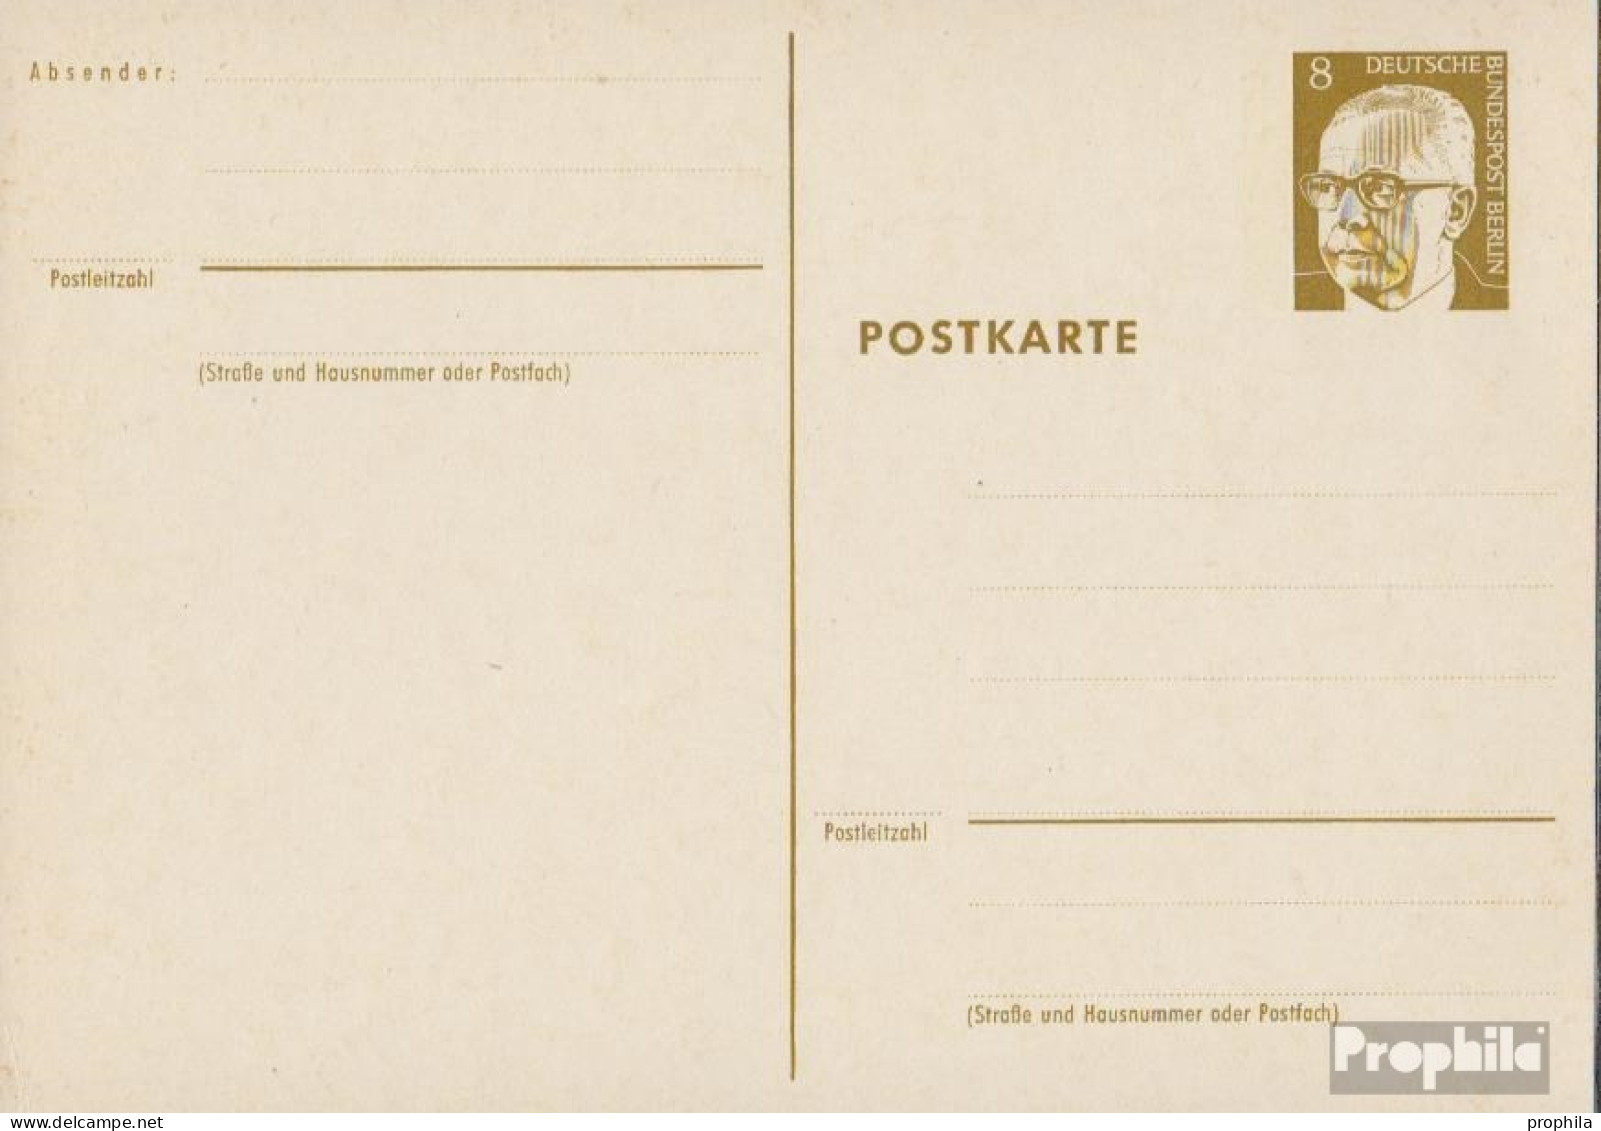 Berlin (West) P80 Amtliche Postkarte Gefälligkeitsgestempelt Gebraucht 1971 Heinemann - Cartoline - Usati